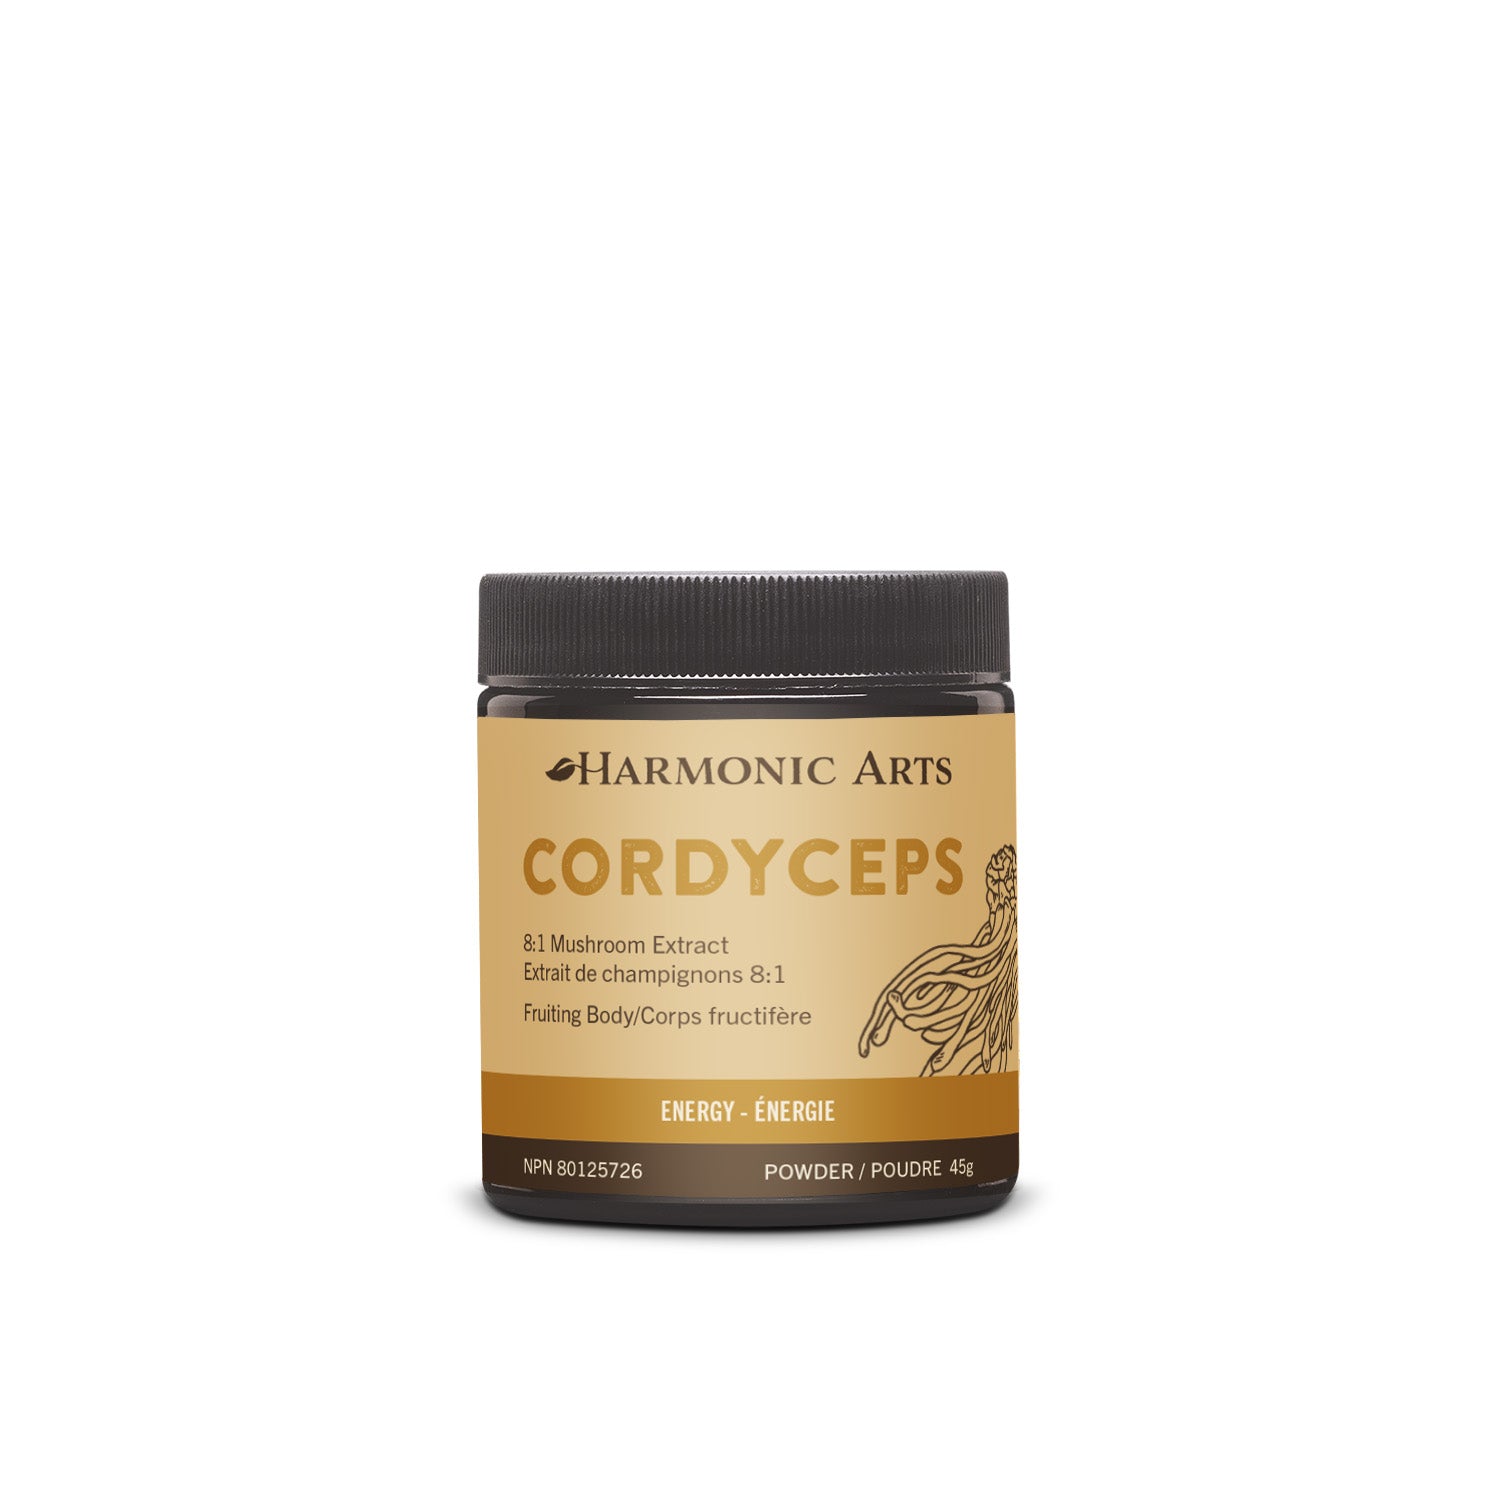 Cordyceps Concentrated Mushroom Powder